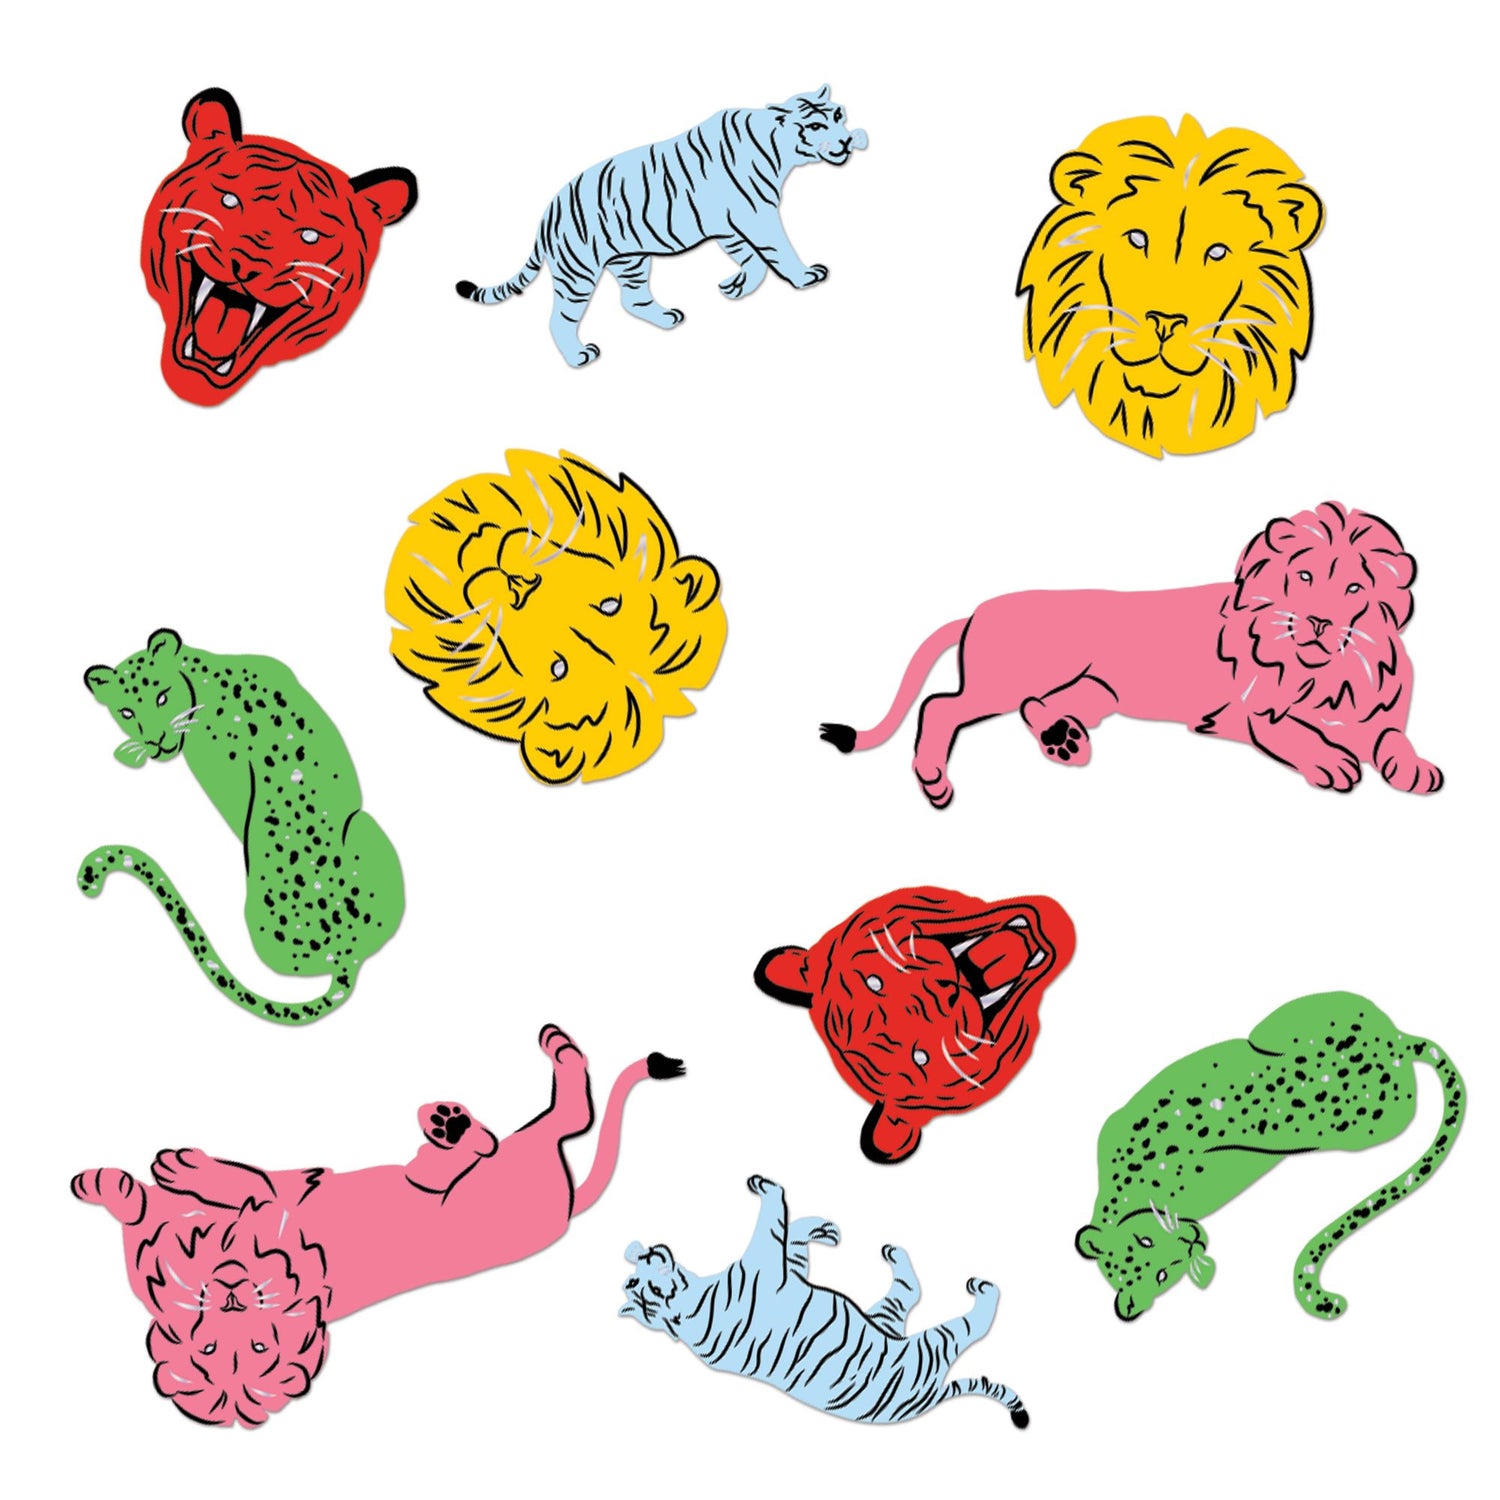 Wild Cats Sticker Confetti